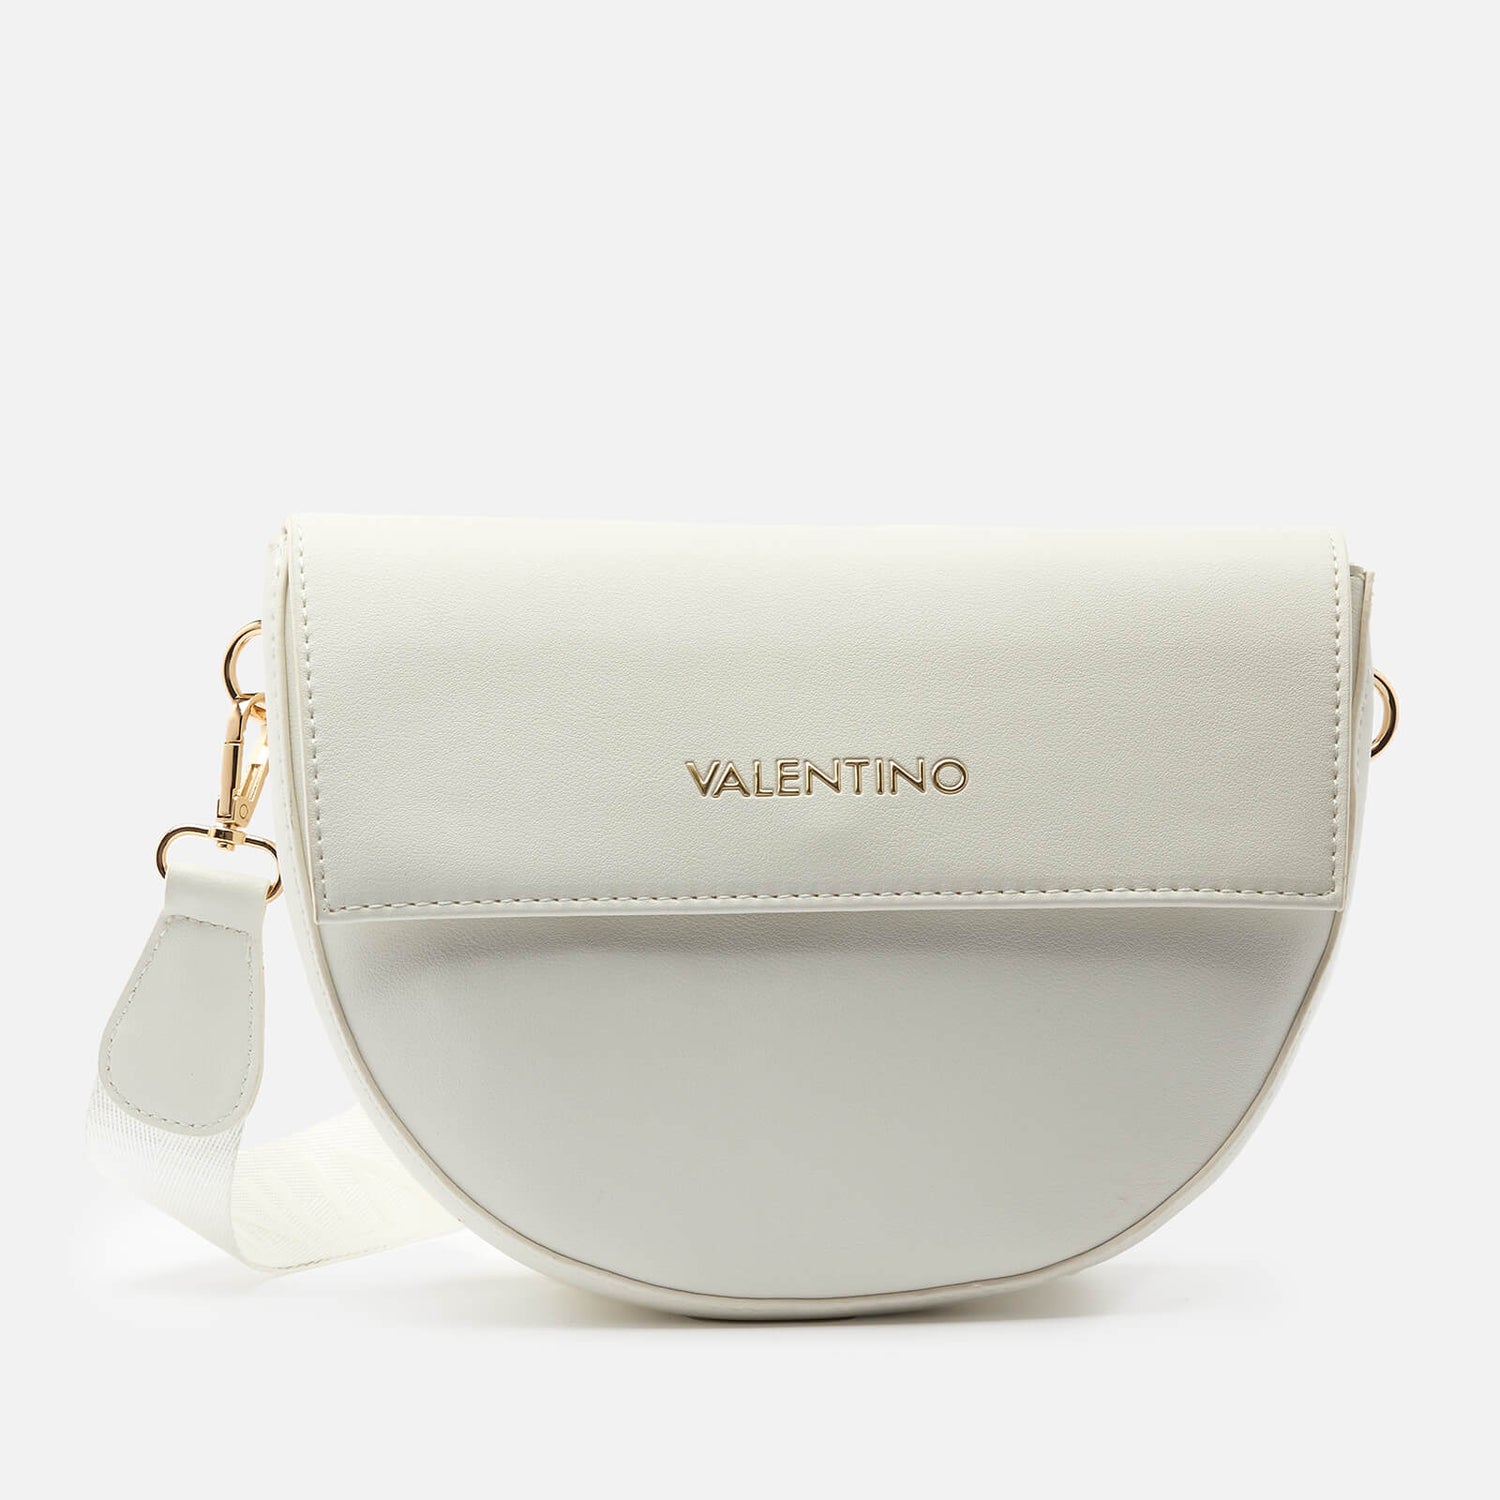 Valentino Bags Women's Bigs Cross Body Bag - White